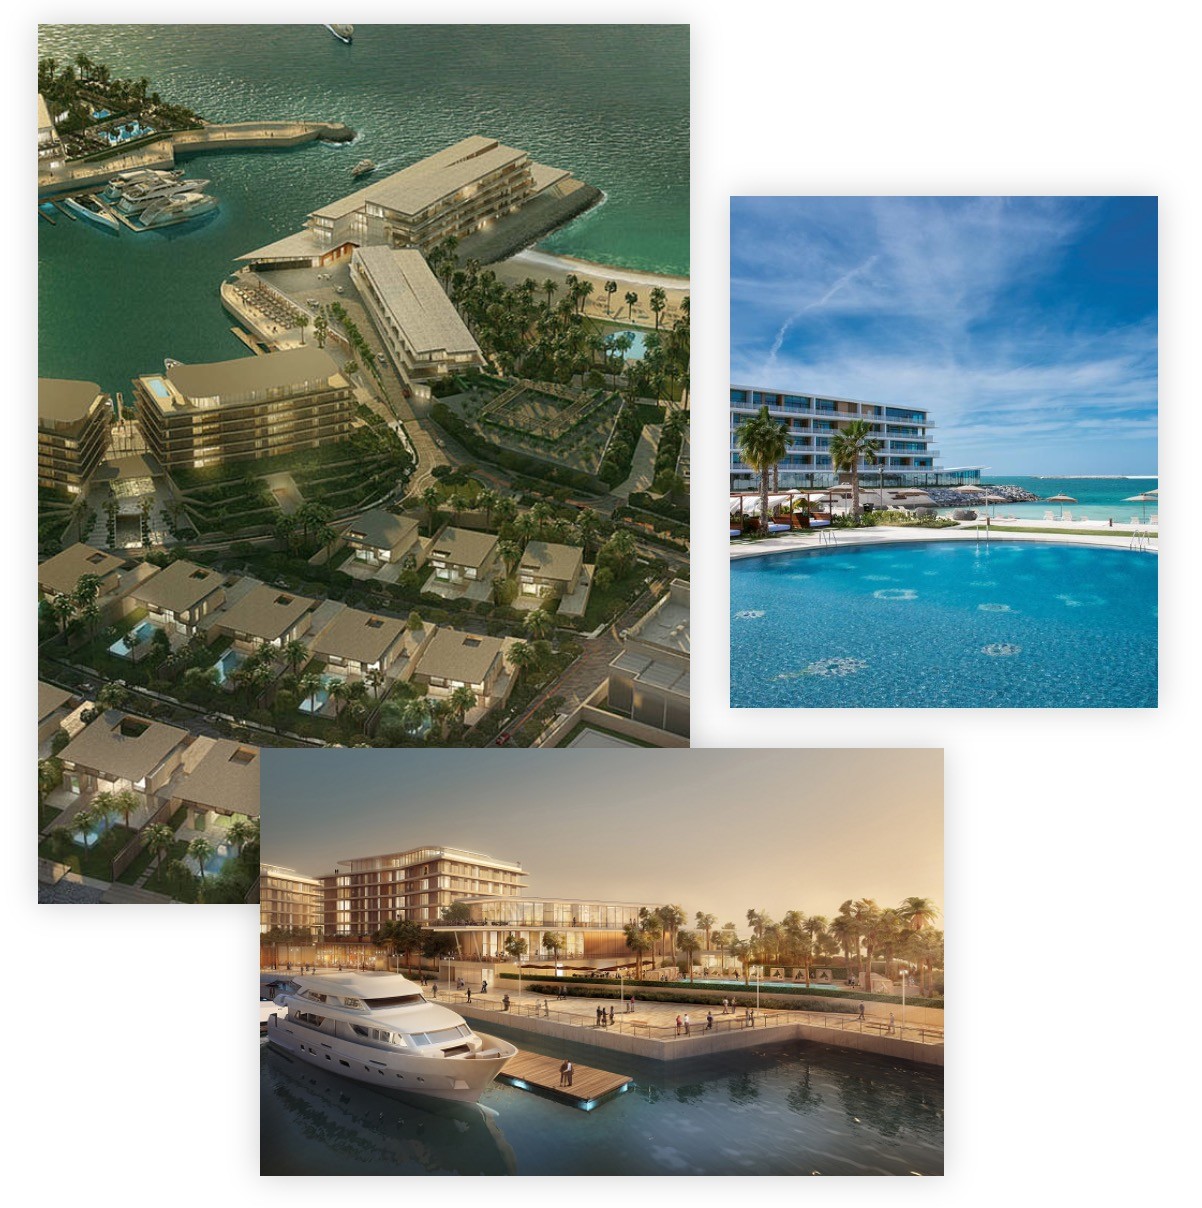 Meraas BVLGARI Resort & Residences at Dubai Jumeirah Bay